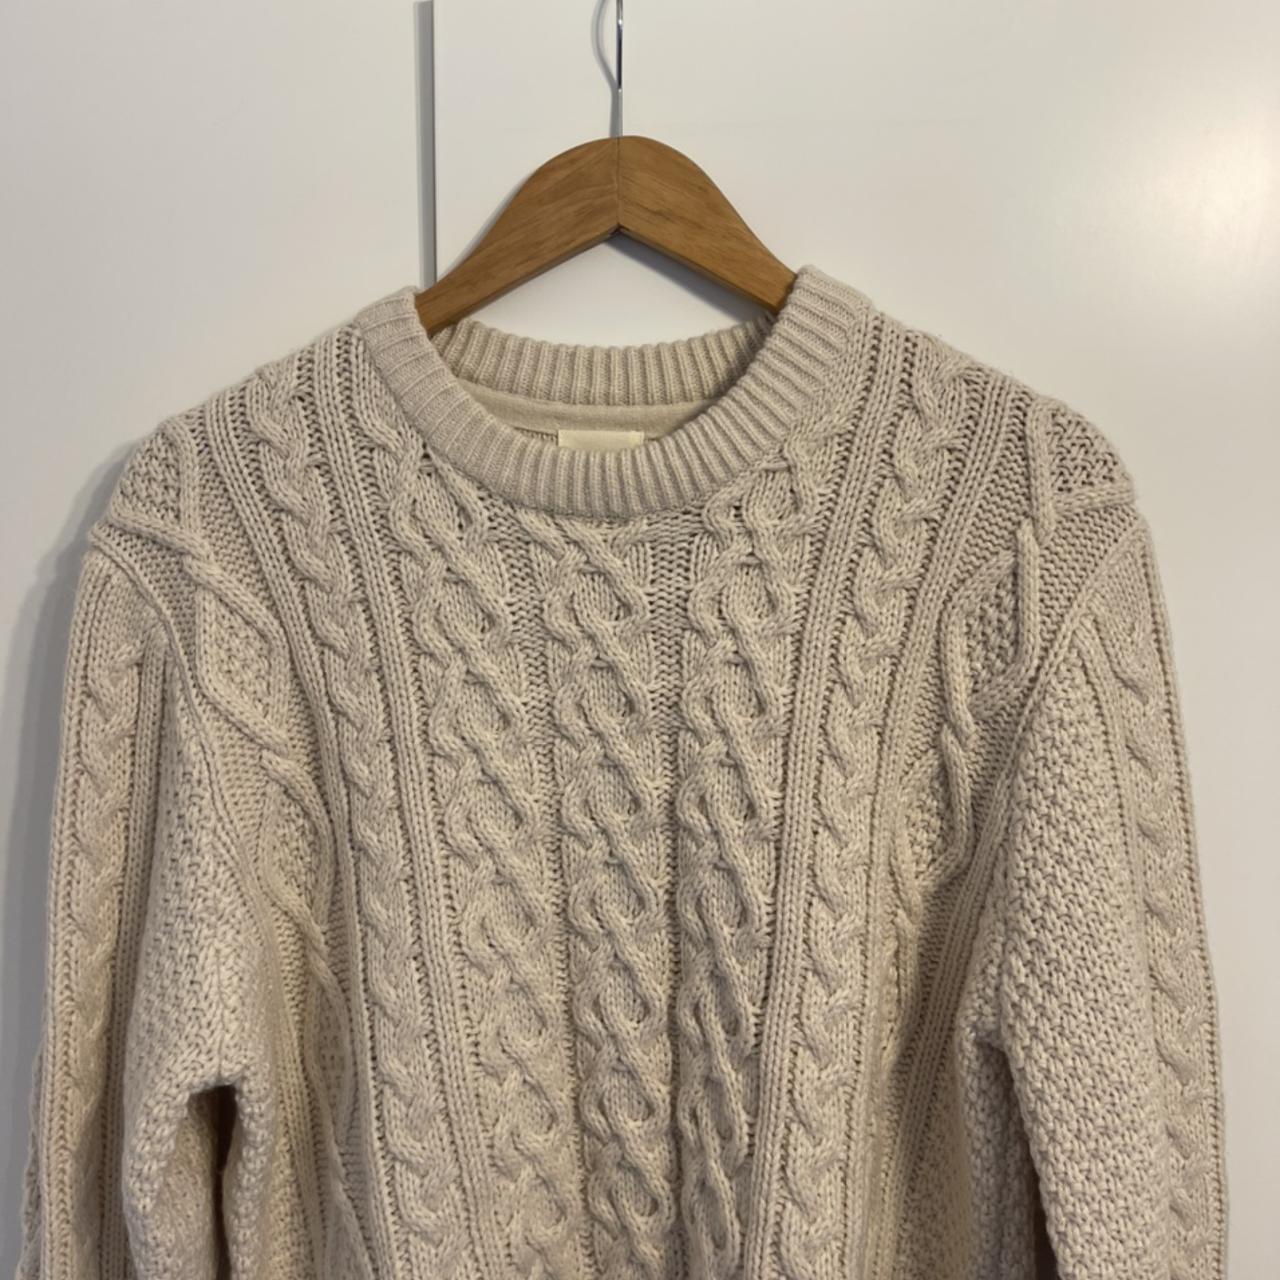 H&m h and m cream beige knitted sweatshirt.... - Depop